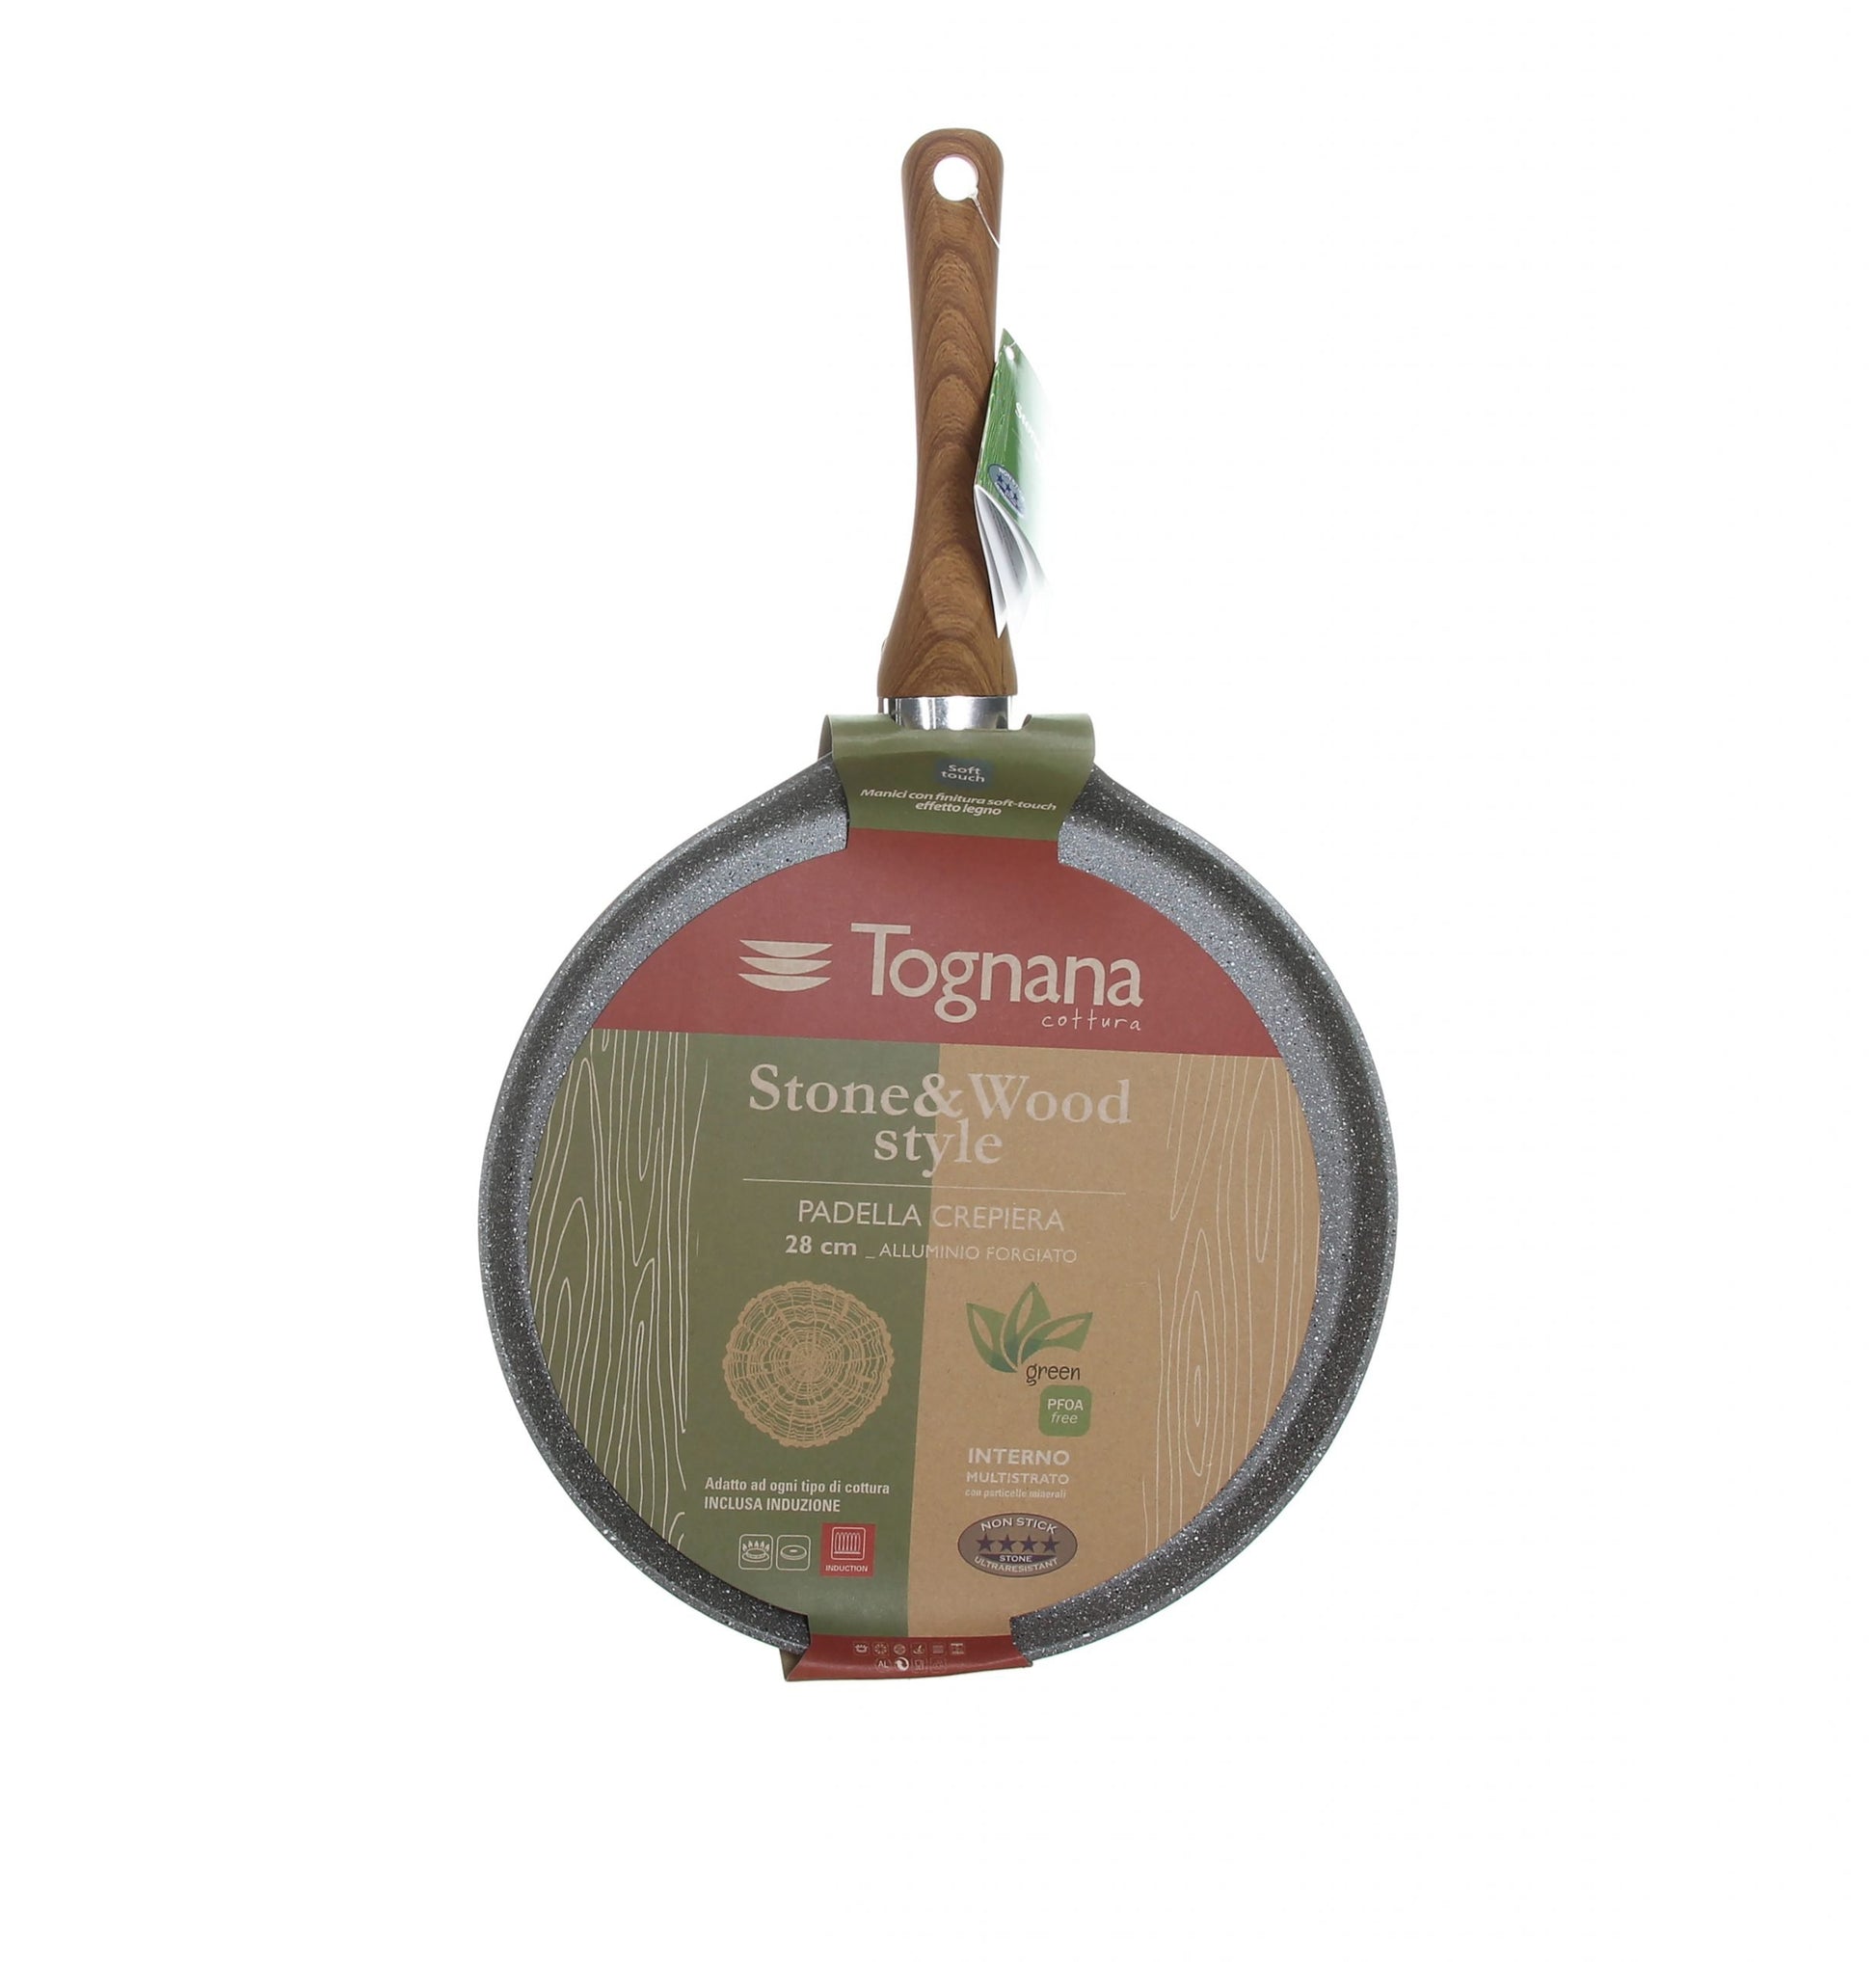 Tognana by Widgeteer Wood & Stone 7 7-8 Pan, 1 Handle – Widgeteer Inc Shop